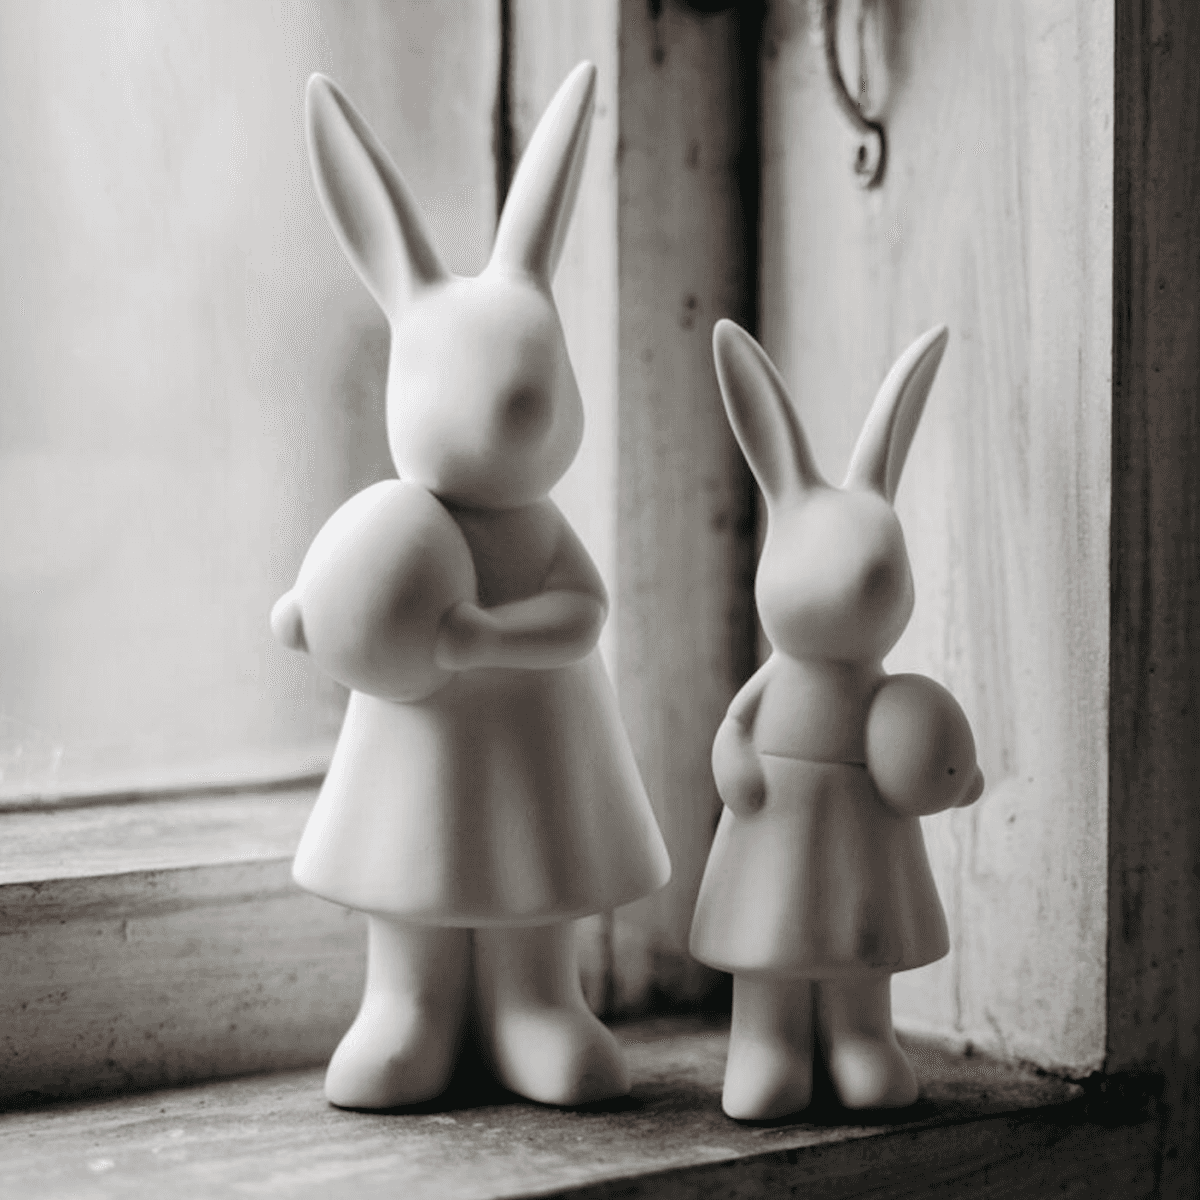 Immagine del prodotto Coniglio Ester in Ceramica opaca Bianca | Storefactory